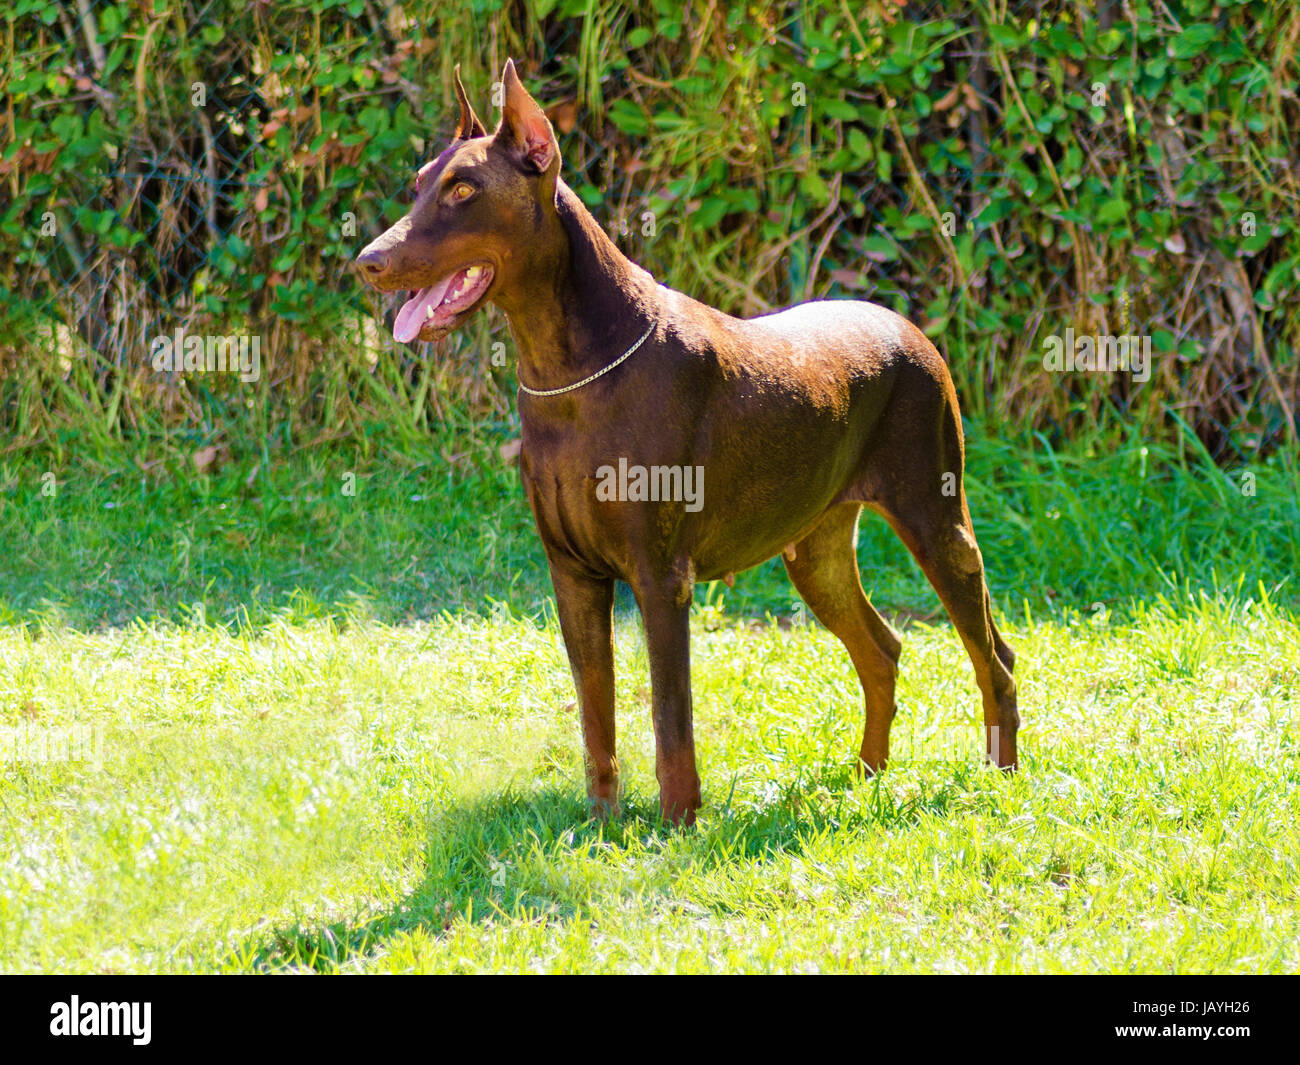 Un jeune, belle, brown Dobermann debout sur la pelouse tout en collant sa langue et à heureux et ludique. A ses oreilles Dobermann ce cropped et queue amarré. Banque D'Images